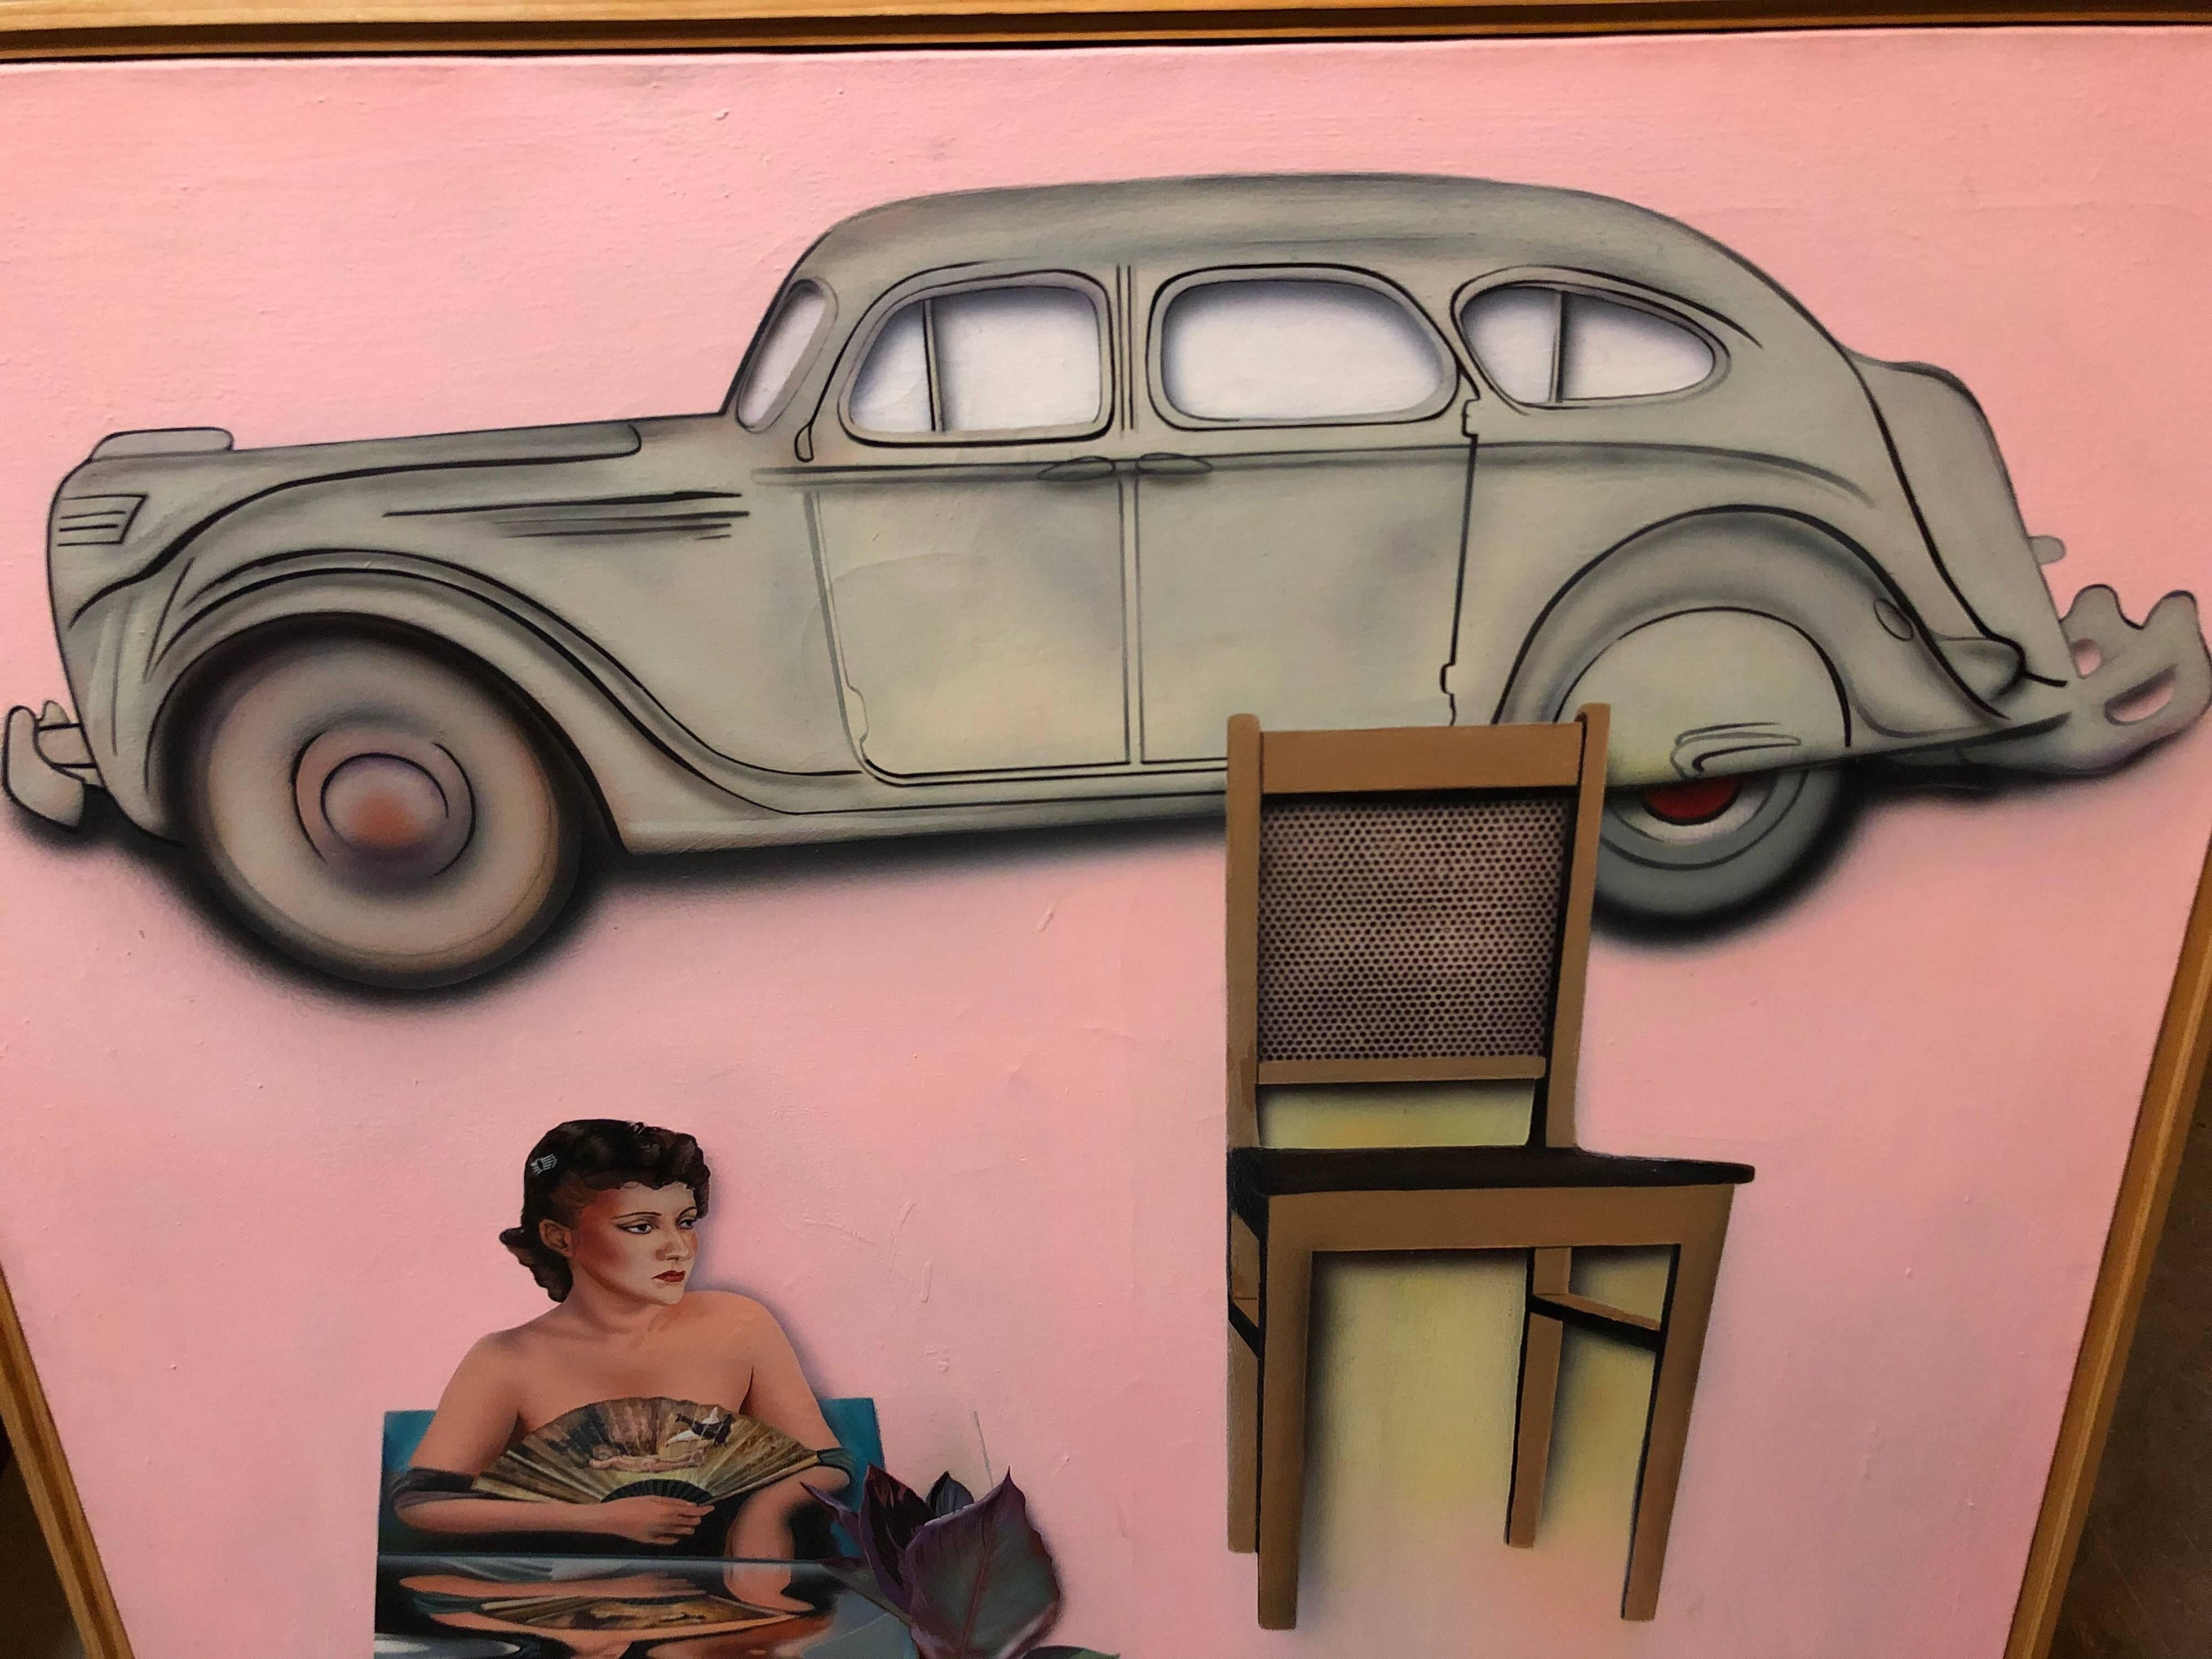 Grande peinture à l'huile américaine vintage d'art populaire israélien représentant une voiture, rose - Pop Art Painting par Joshua Griffit